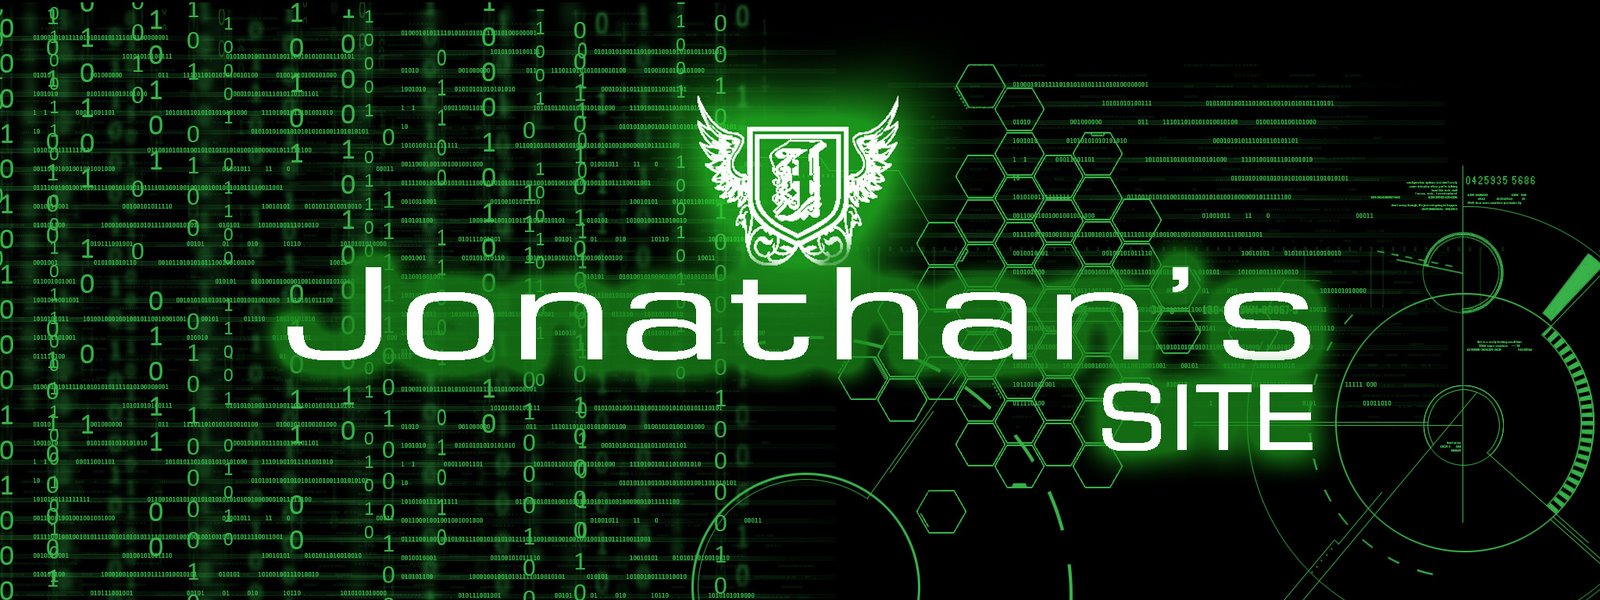 Jonathan's Site